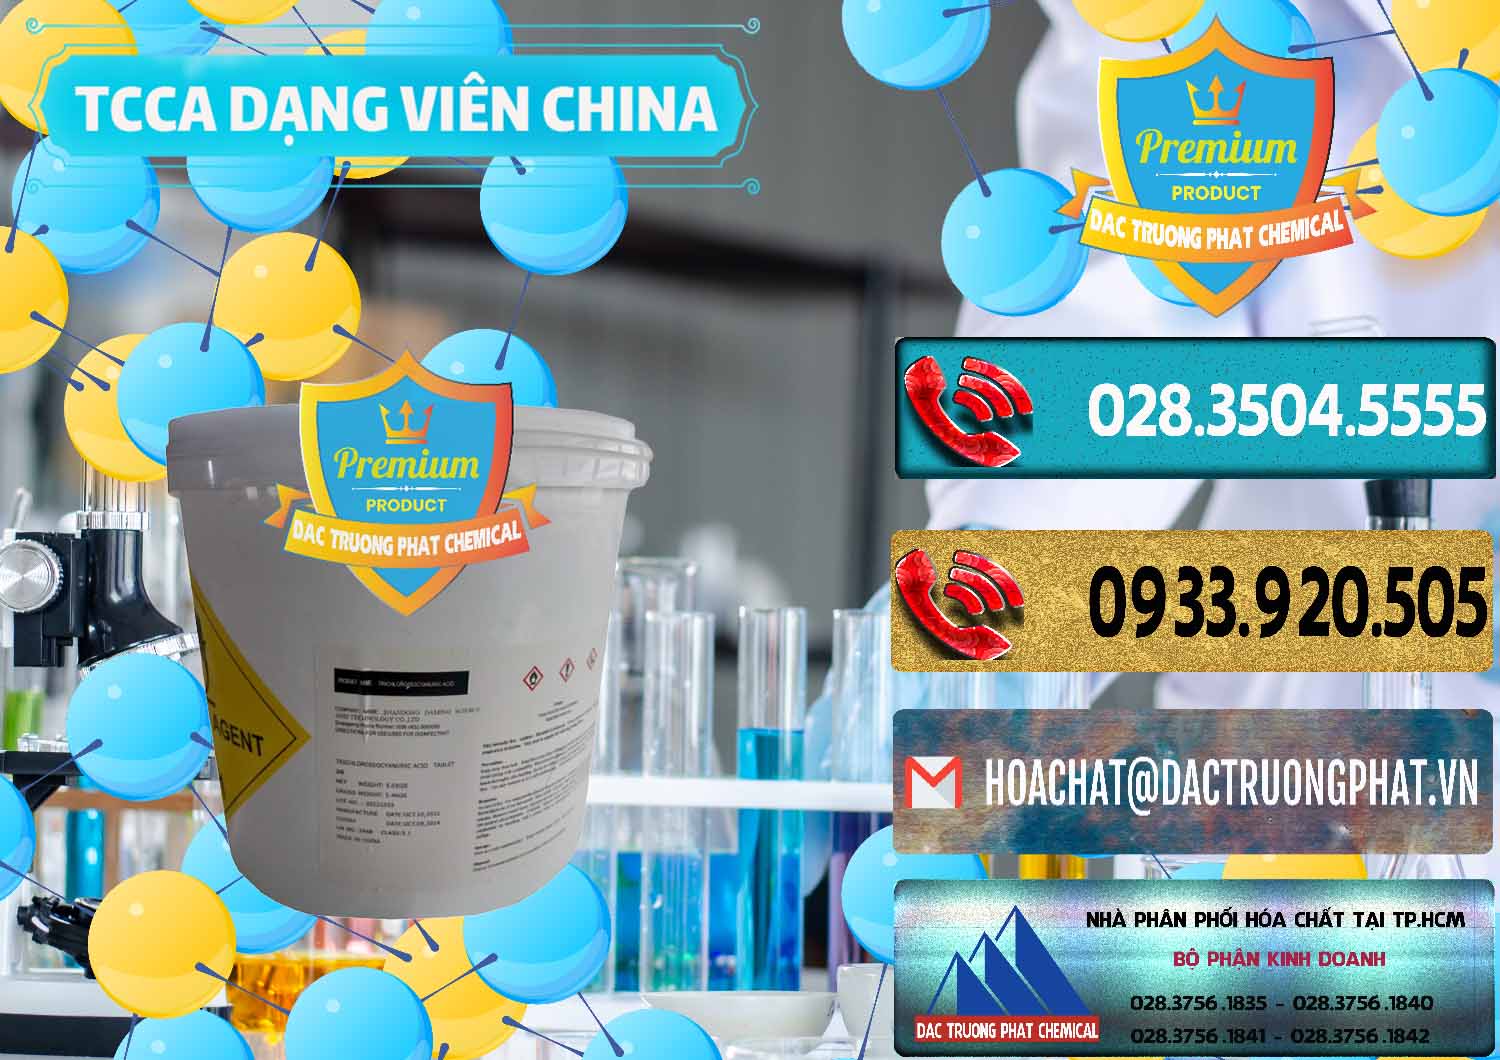 Chuyên bán - cung ứng TCCA - Acid Trichloroisocyanuric Dạng Viên Thùng 5kg Trung Quốc China - 0379 - Cty phân phối & cung cấp hóa chất tại TP.HCM - hoachatdetnhuom.com